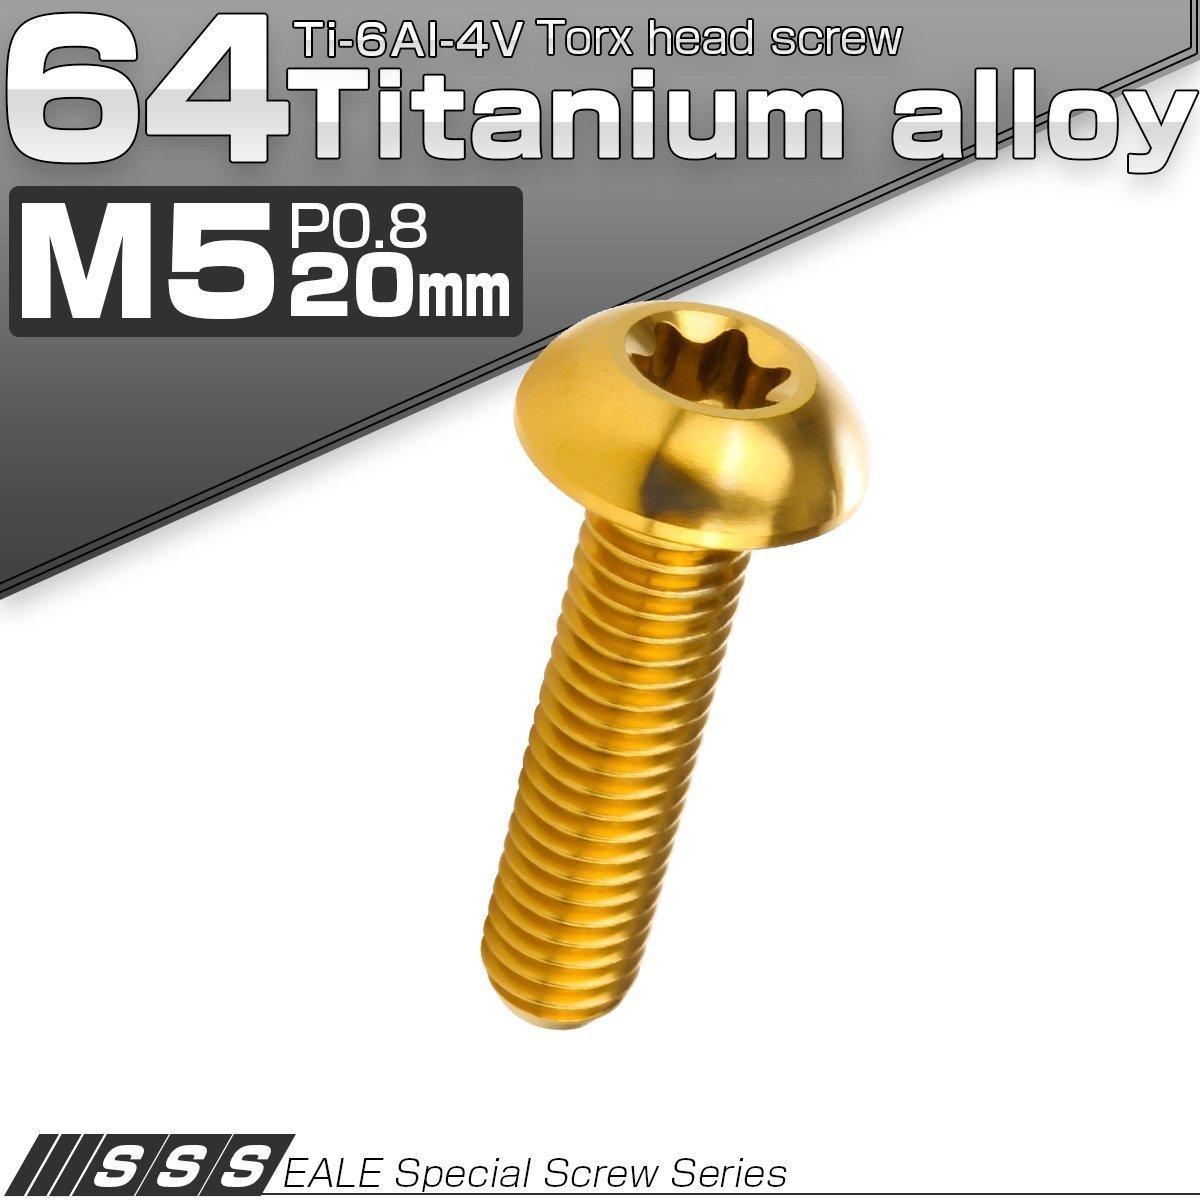 64チタン製 M5 20mm P0.8 トルクス穴付き ボタンボルト ゴールド チタンボルト JA935_画像1